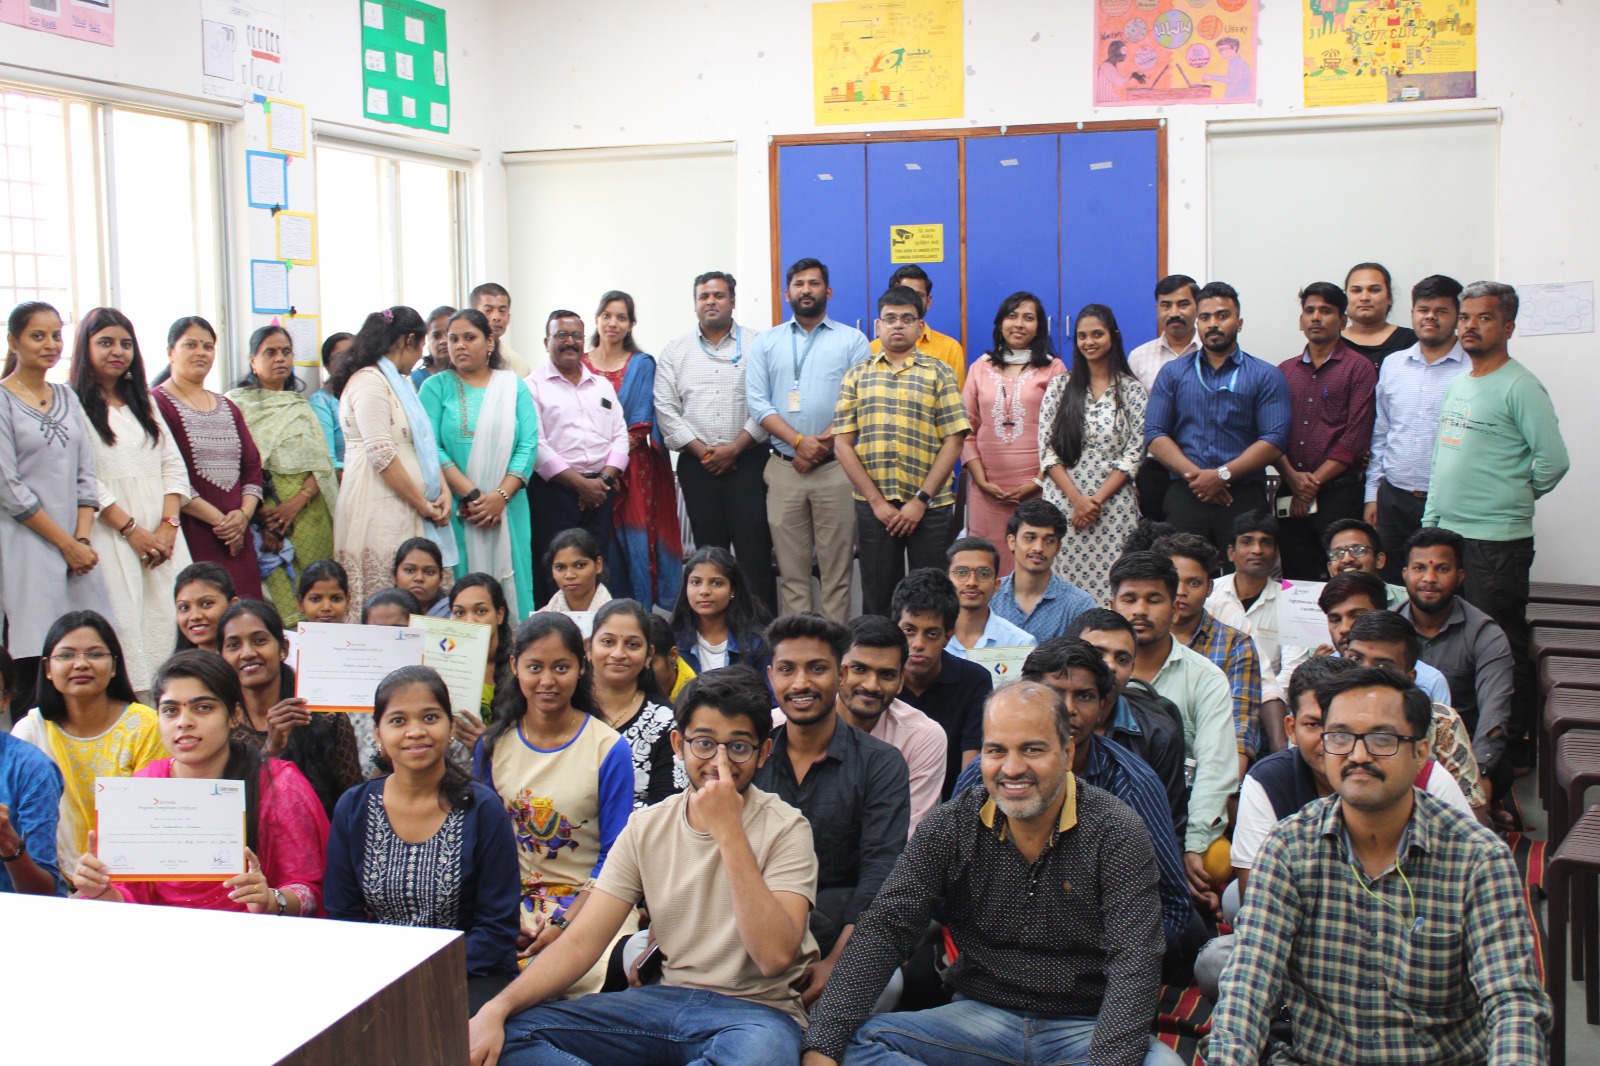 लाईट हाऊसच्या प्रशिक्षणार्थ्यांनी घेतली “मेरा युवा भारत” उपक्रमाची माहिती